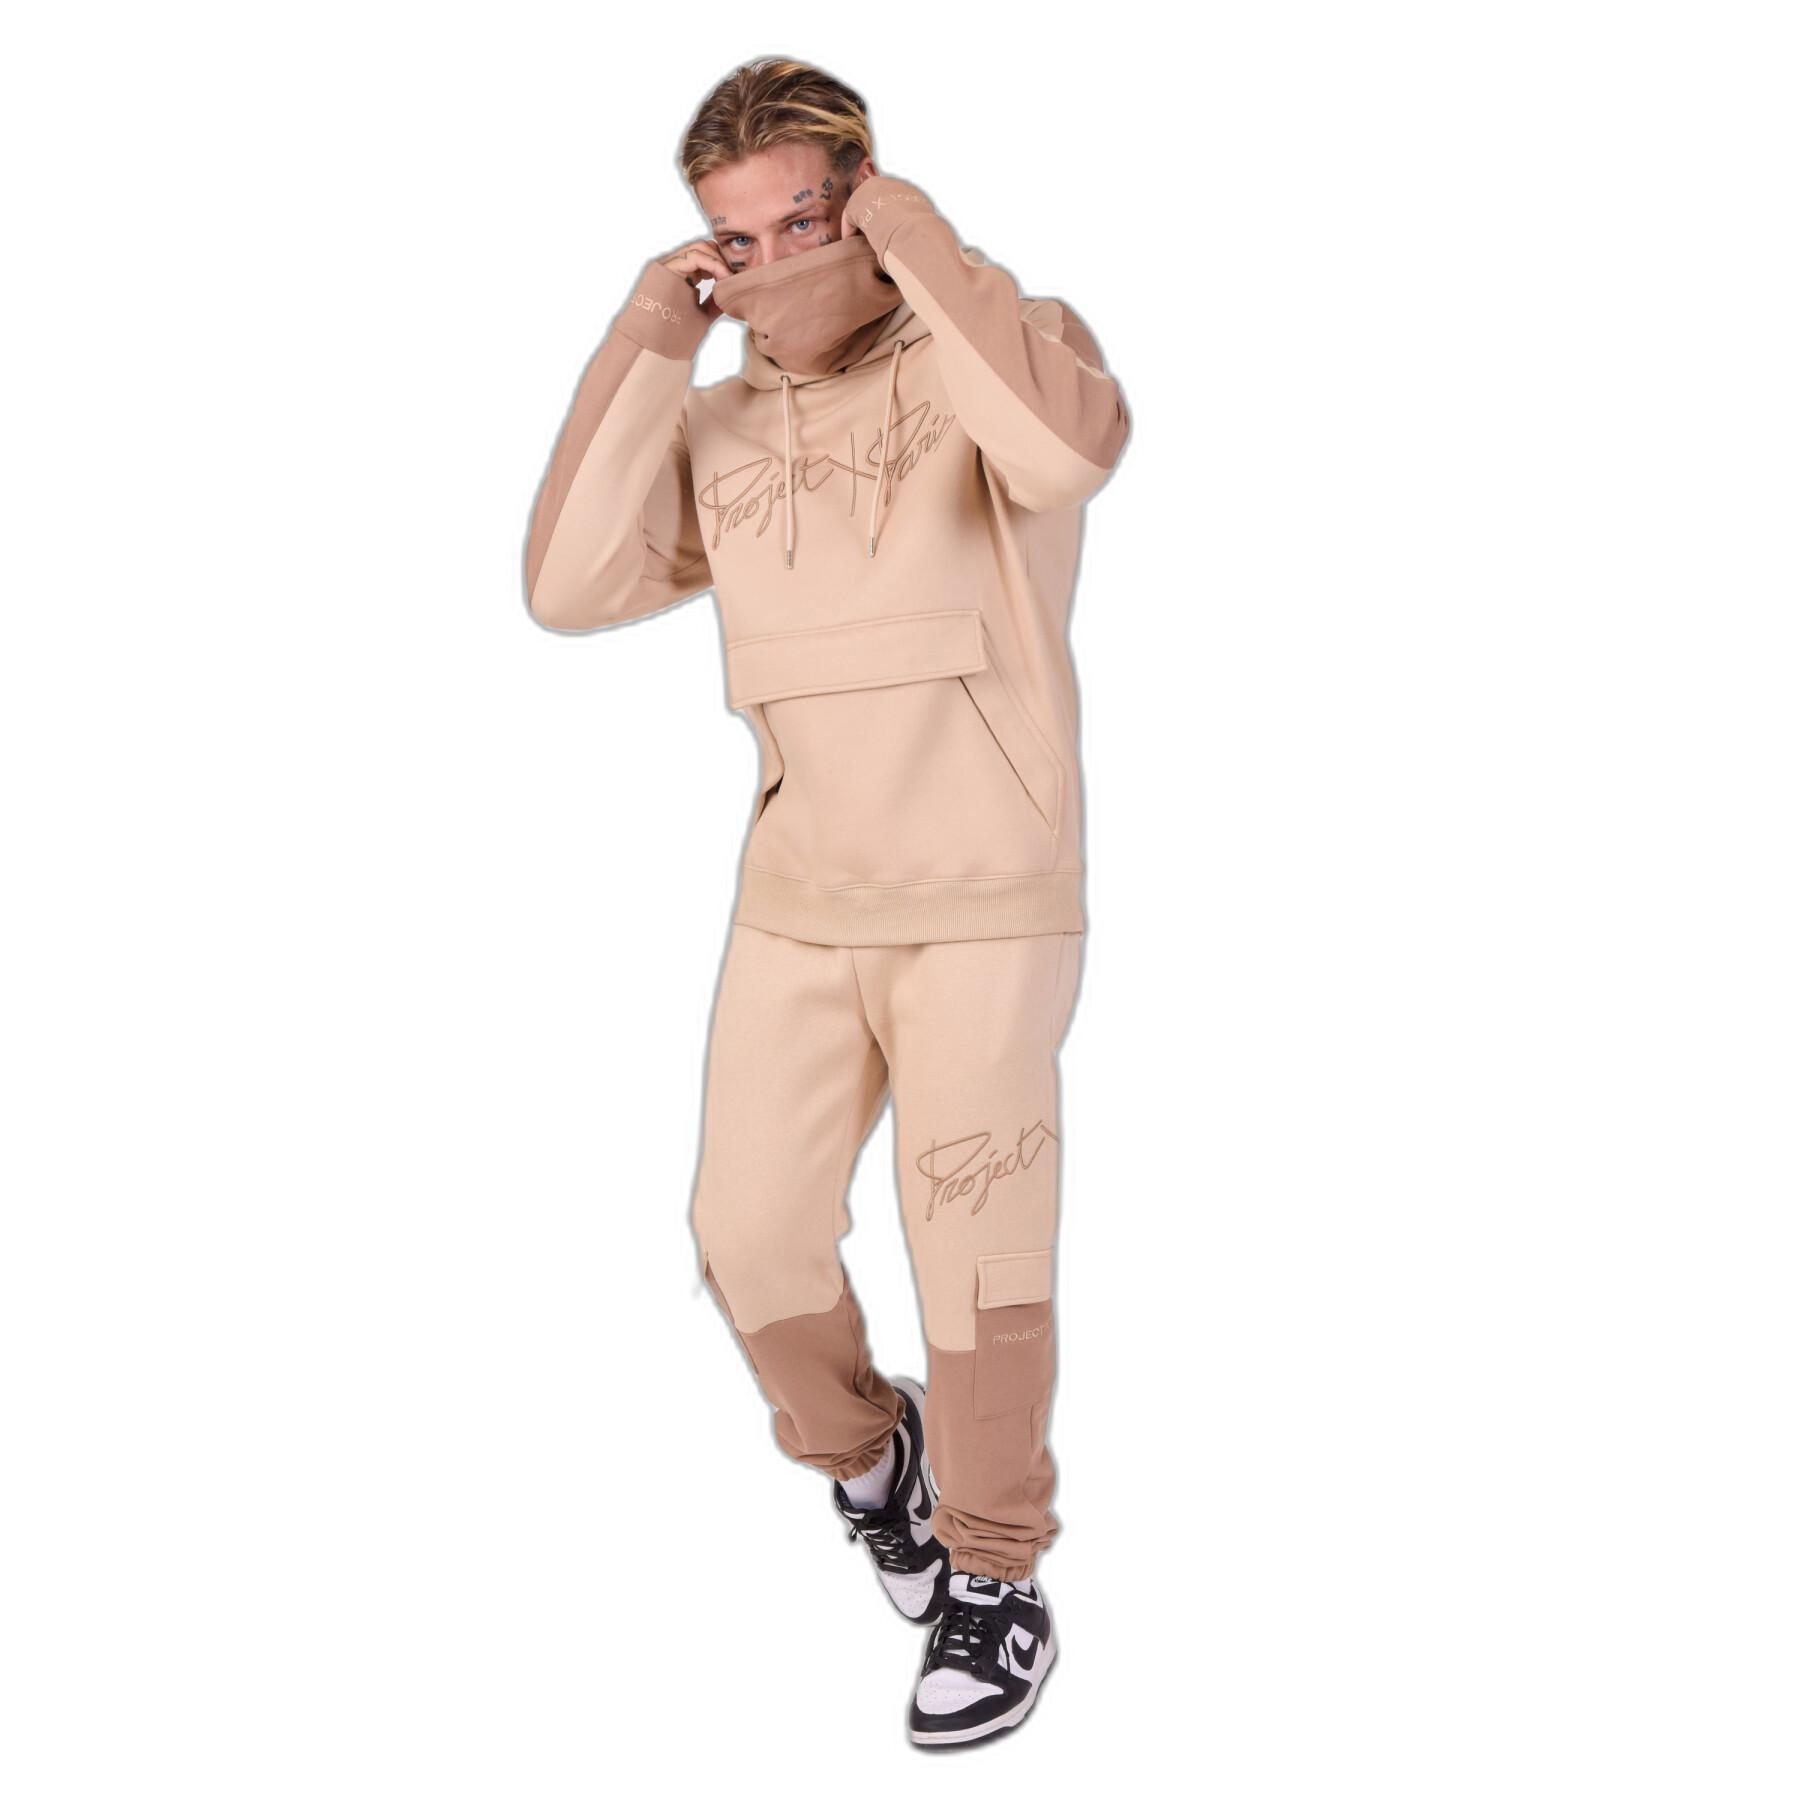 Two-tone jogging suit Project X Paris